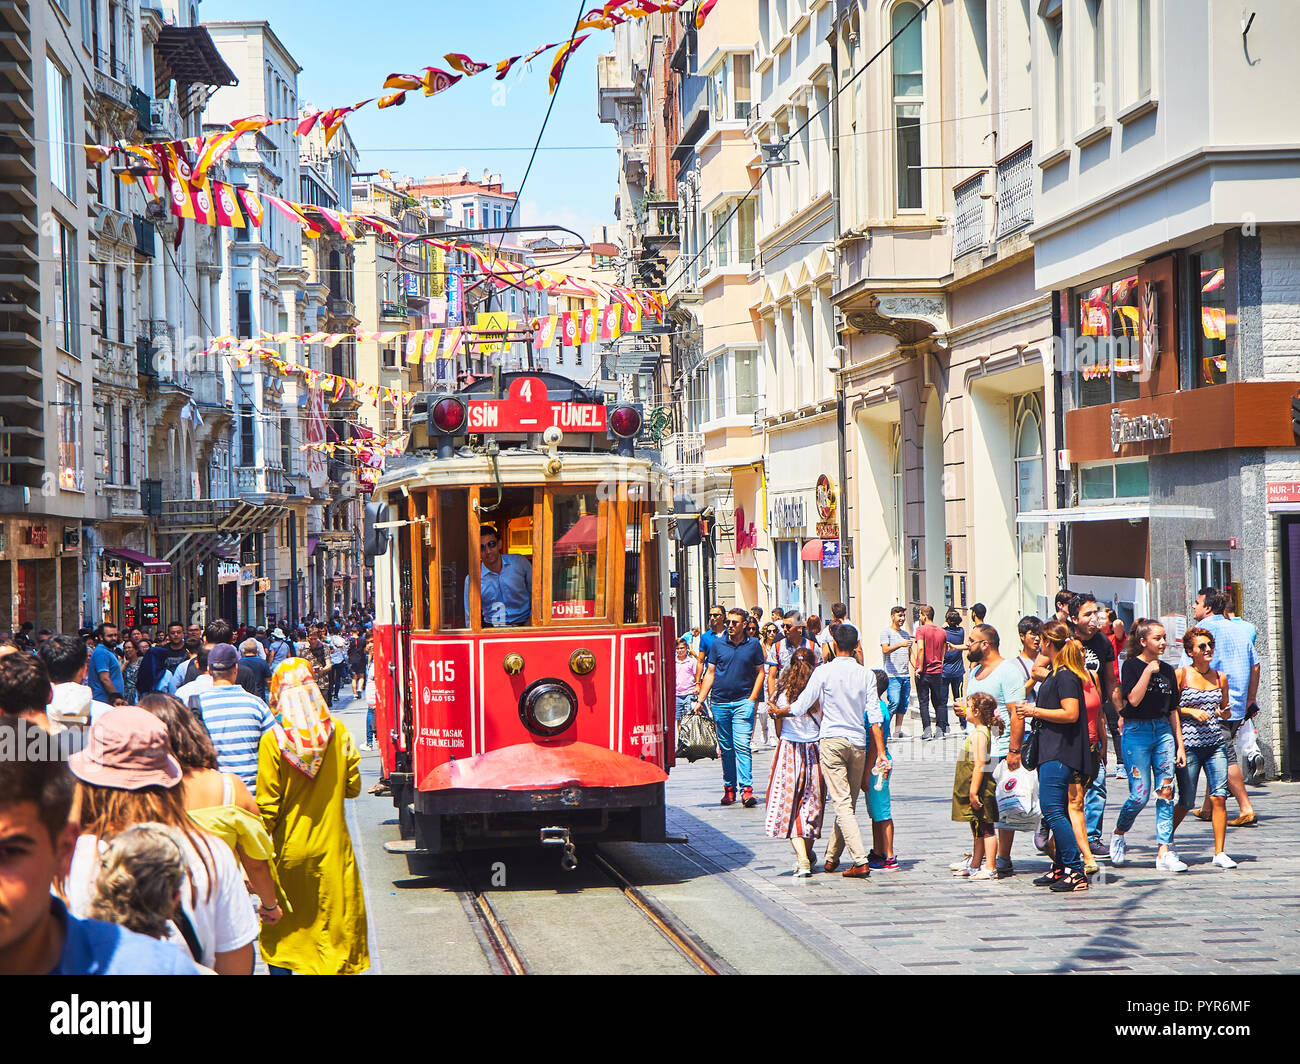 Un tram traversant la rue Istiklal animée, ornée de fanions du Club sportif de Galatasaray. Quartier de Beyoglu, Turquie. Banque D'Images